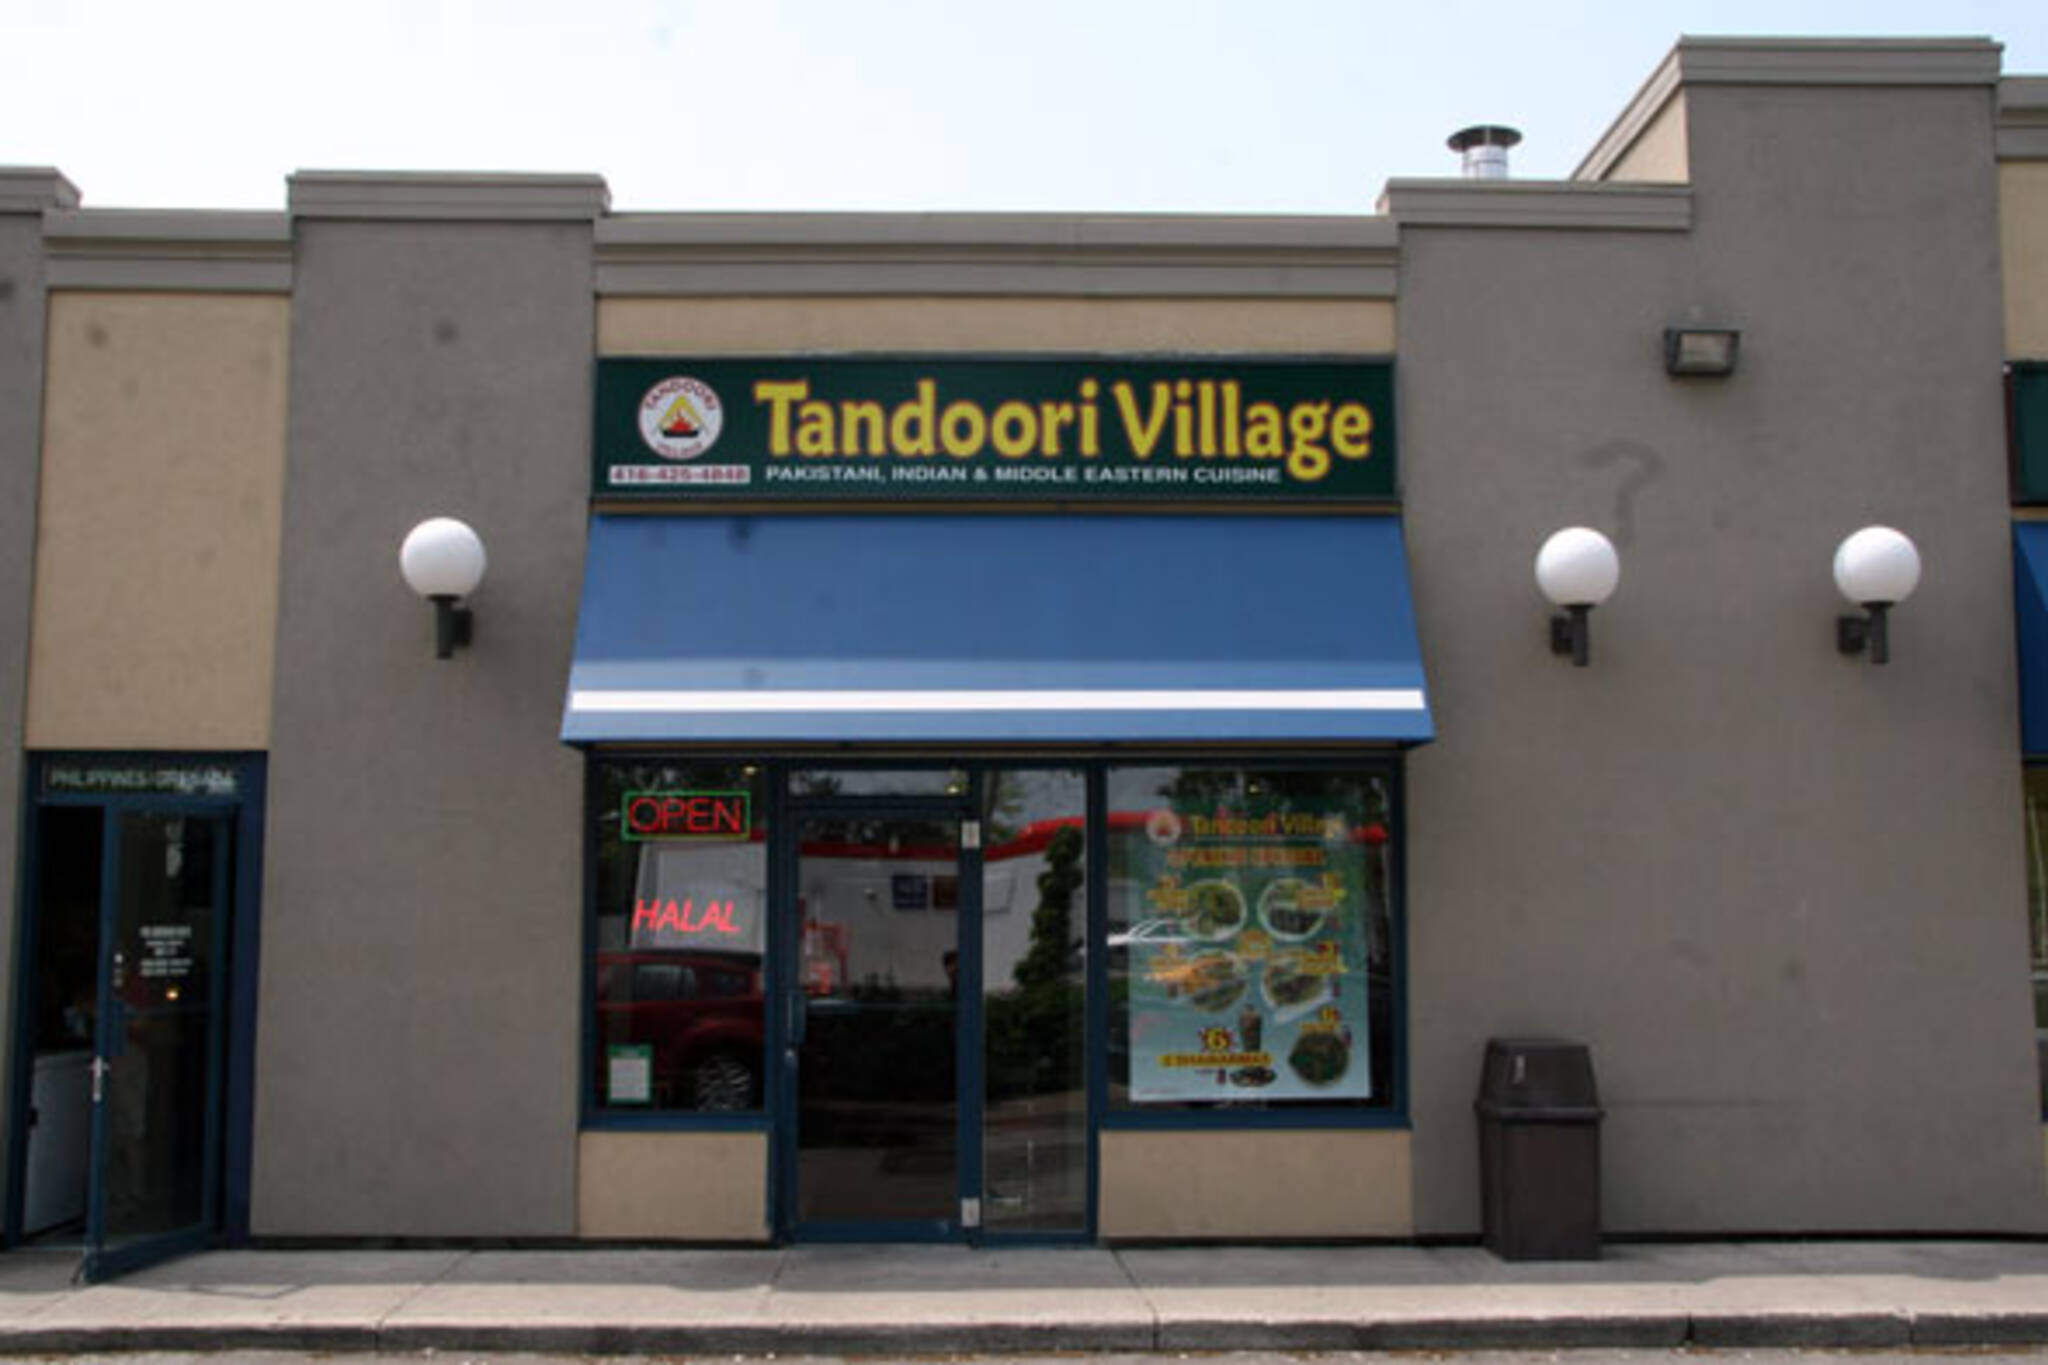 Tandoori Village